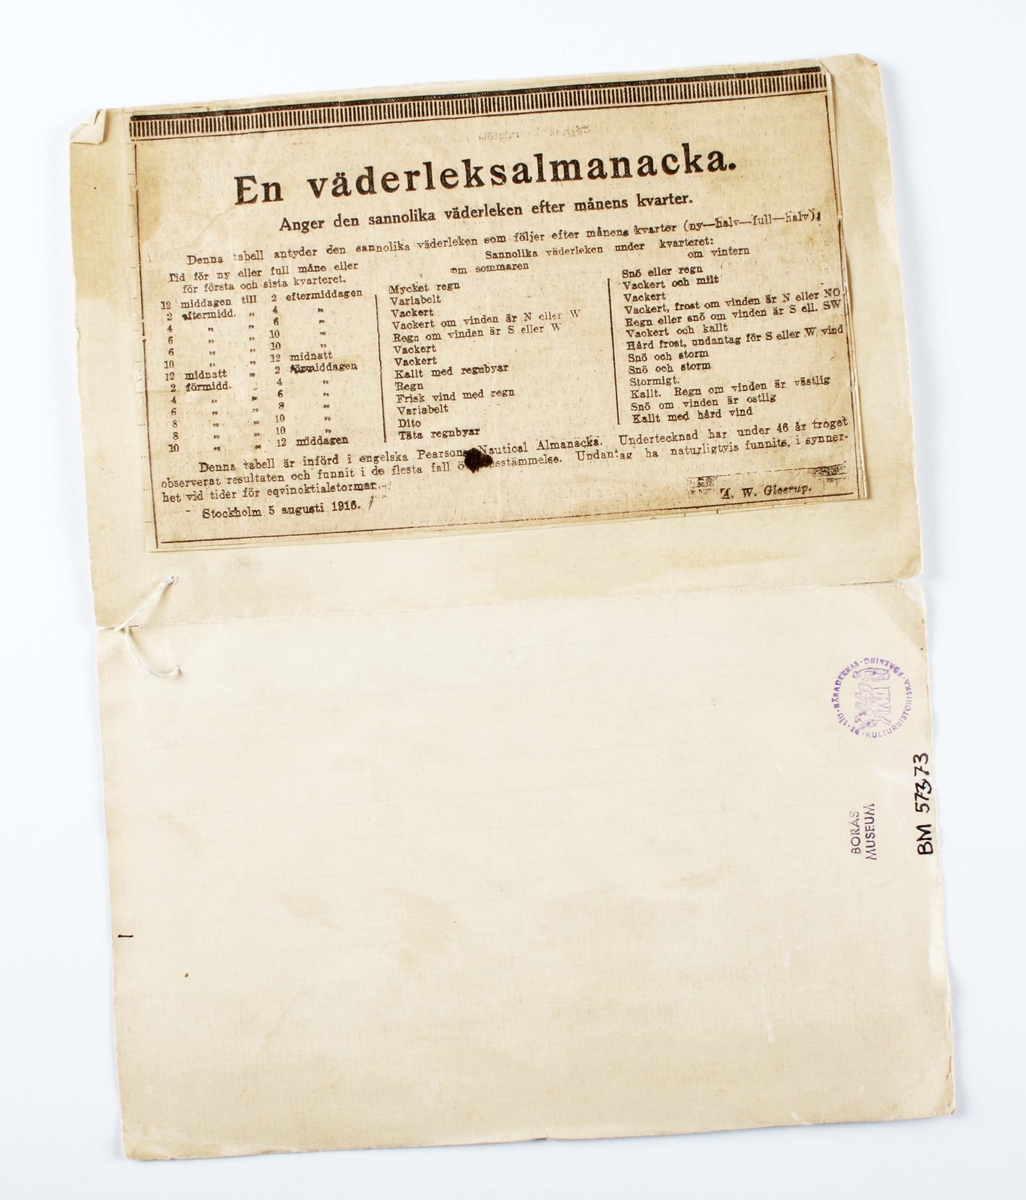 Väderalmanacka. Tillverkad i Stockholm 5 augusti 1916. Längst ned till höger: "A. W. Gleerup". Papperslapp, limmad på styvt, rektangulärt, vikt pappersark. Längd 270 mm, Bredd 210 mm. Text: "En väderleksalmanacka. Anger den sannolika väderleken efter månens kvarter". Insidan med handskrift: "Väderleks-Tabell Uppsatt af Doktor Hershel". Med tidsangivelser och väderrapporter.